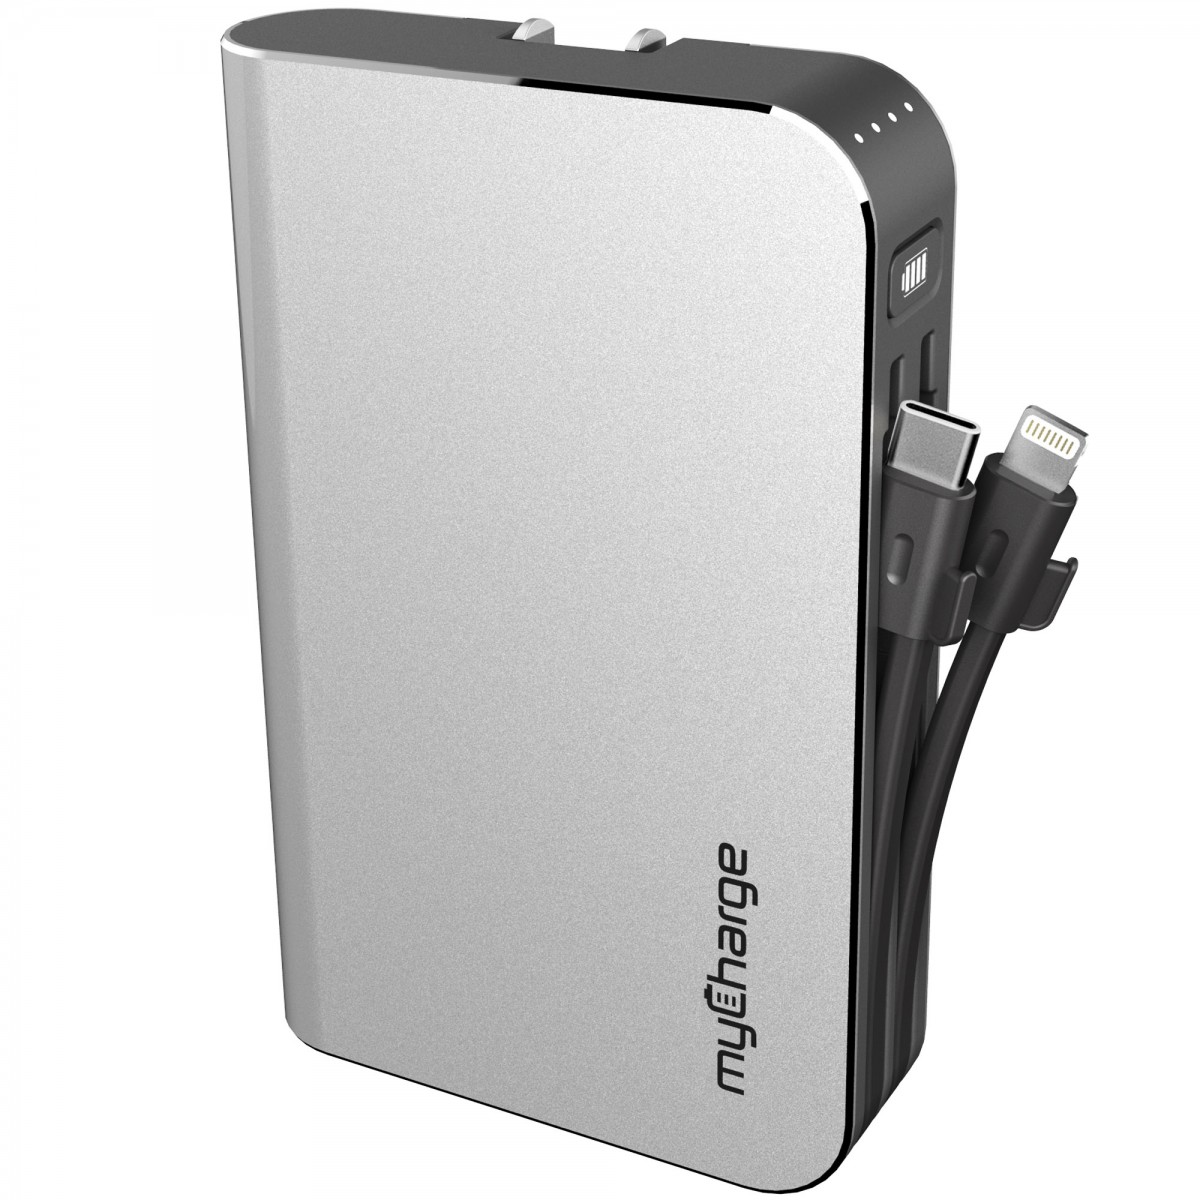 The myCharge HubPlus 6700mAh portable charger. Photo courtesy myCharge